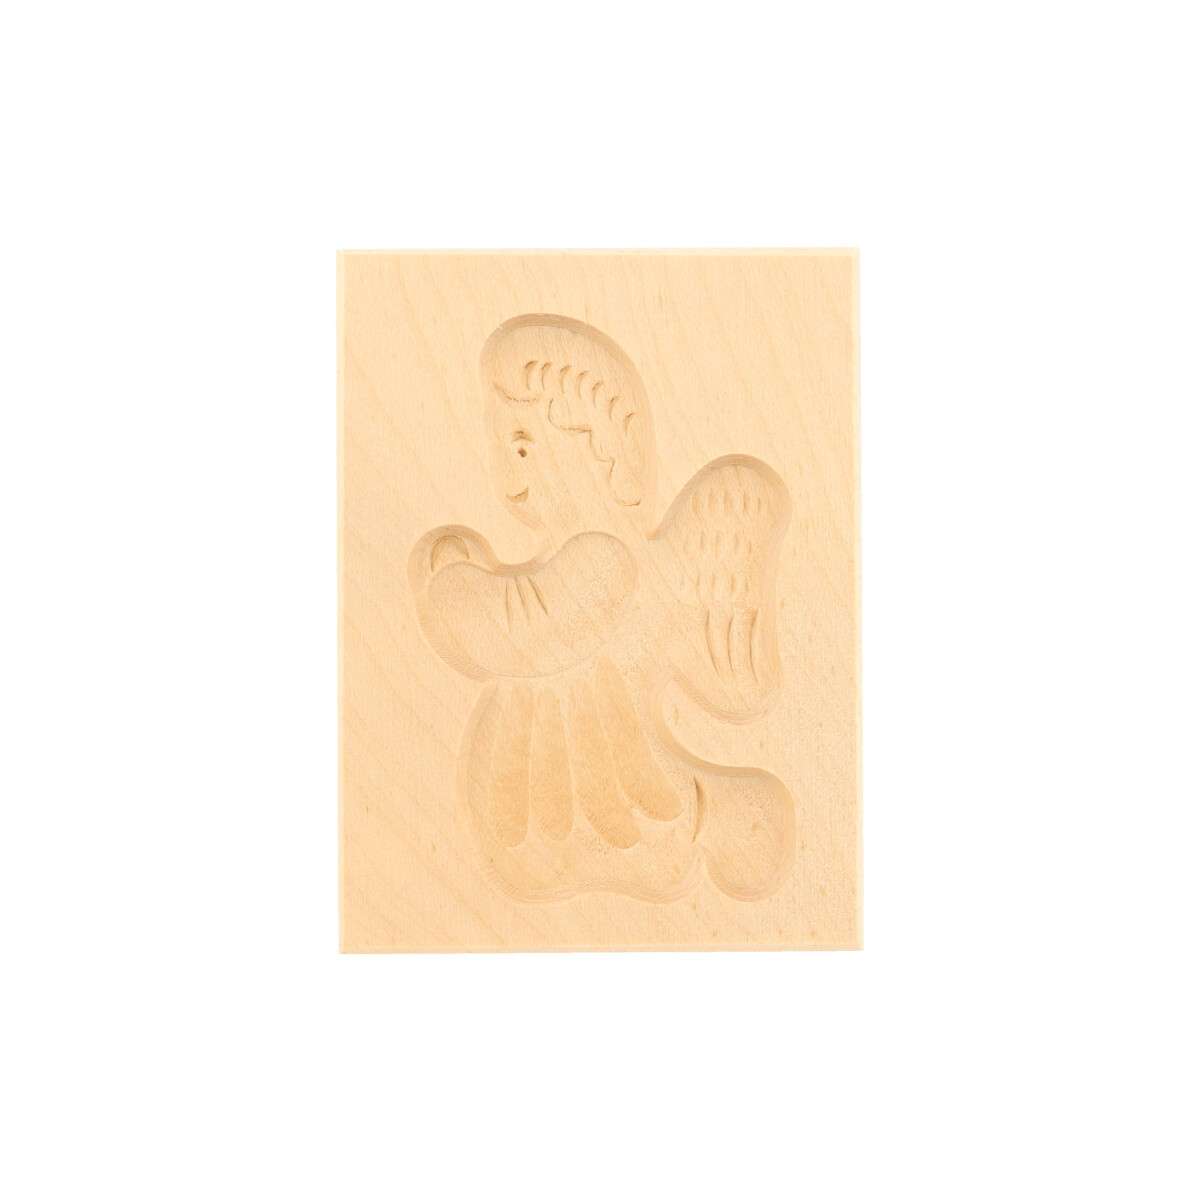 Spekulatiusform, 1 Bild, kniender Engel aus Holz 8 cm